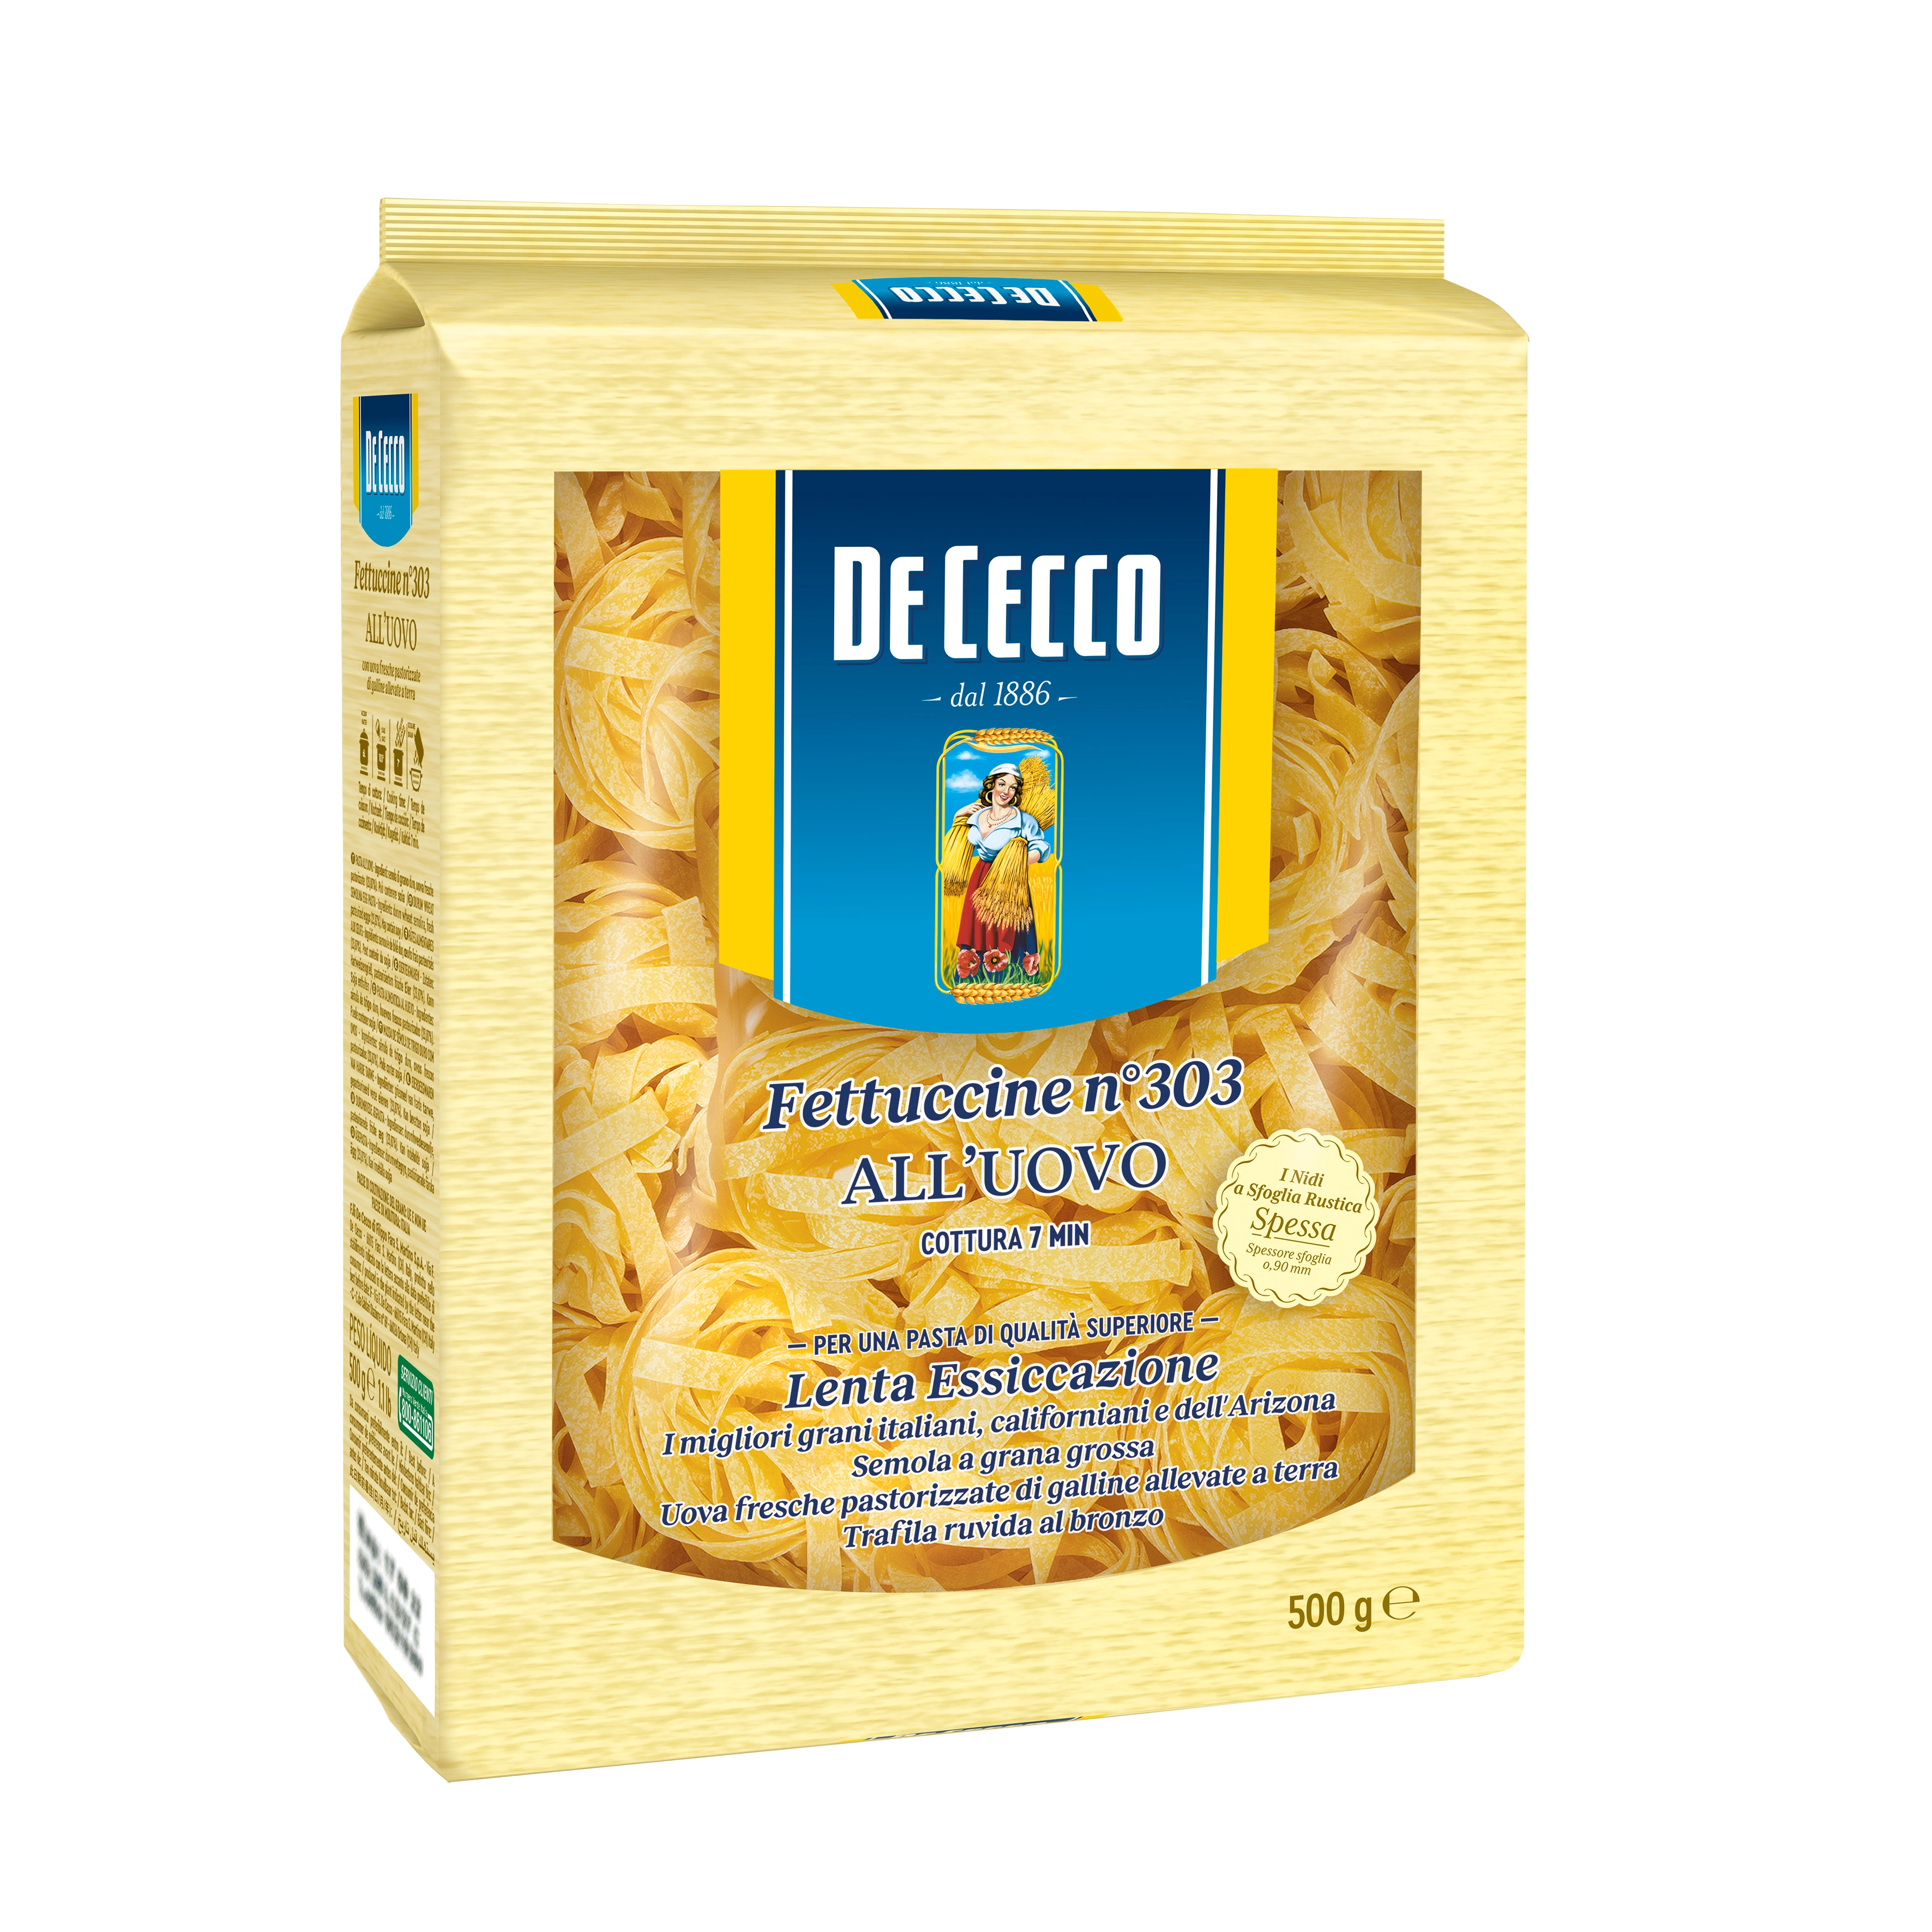 De Cecco Fettuccine Egg pasta (UOVO) N303 500g